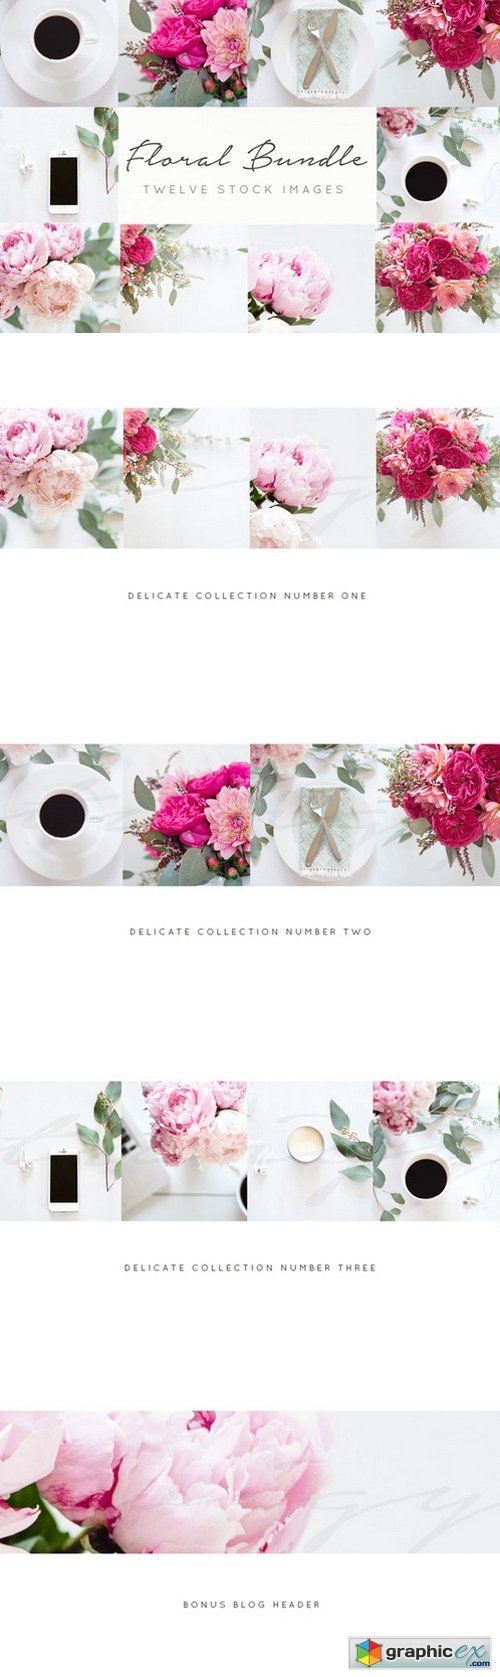 Floral Stock Images+FREE blog header